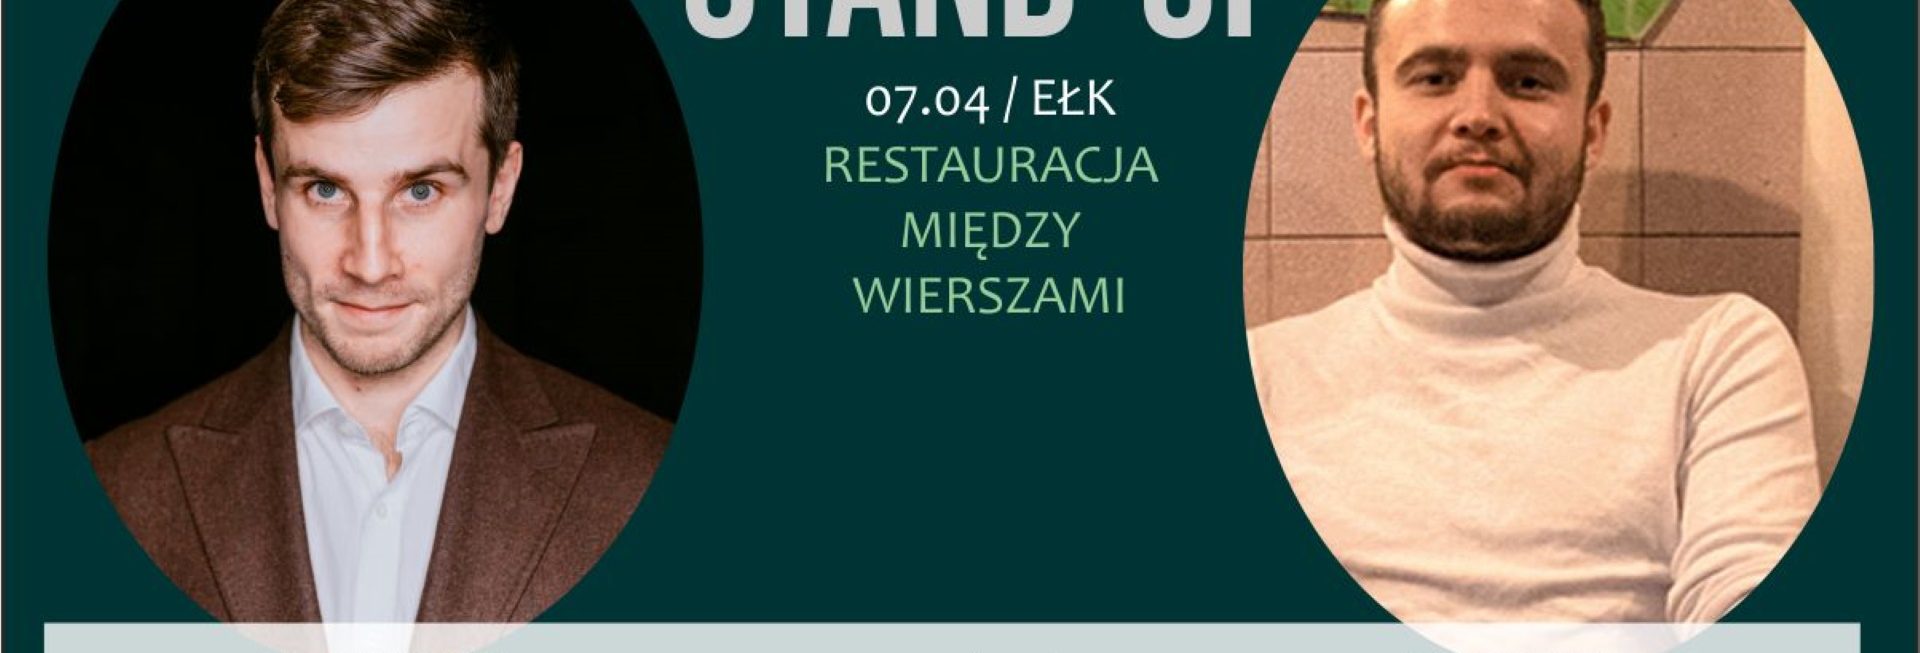 Plakat graficzny zapraszający do Ełku na Stand-up Warmia BARTOSZ ZALEWSKI & CEZARY PONTTEFSKI Ełk 2022. 